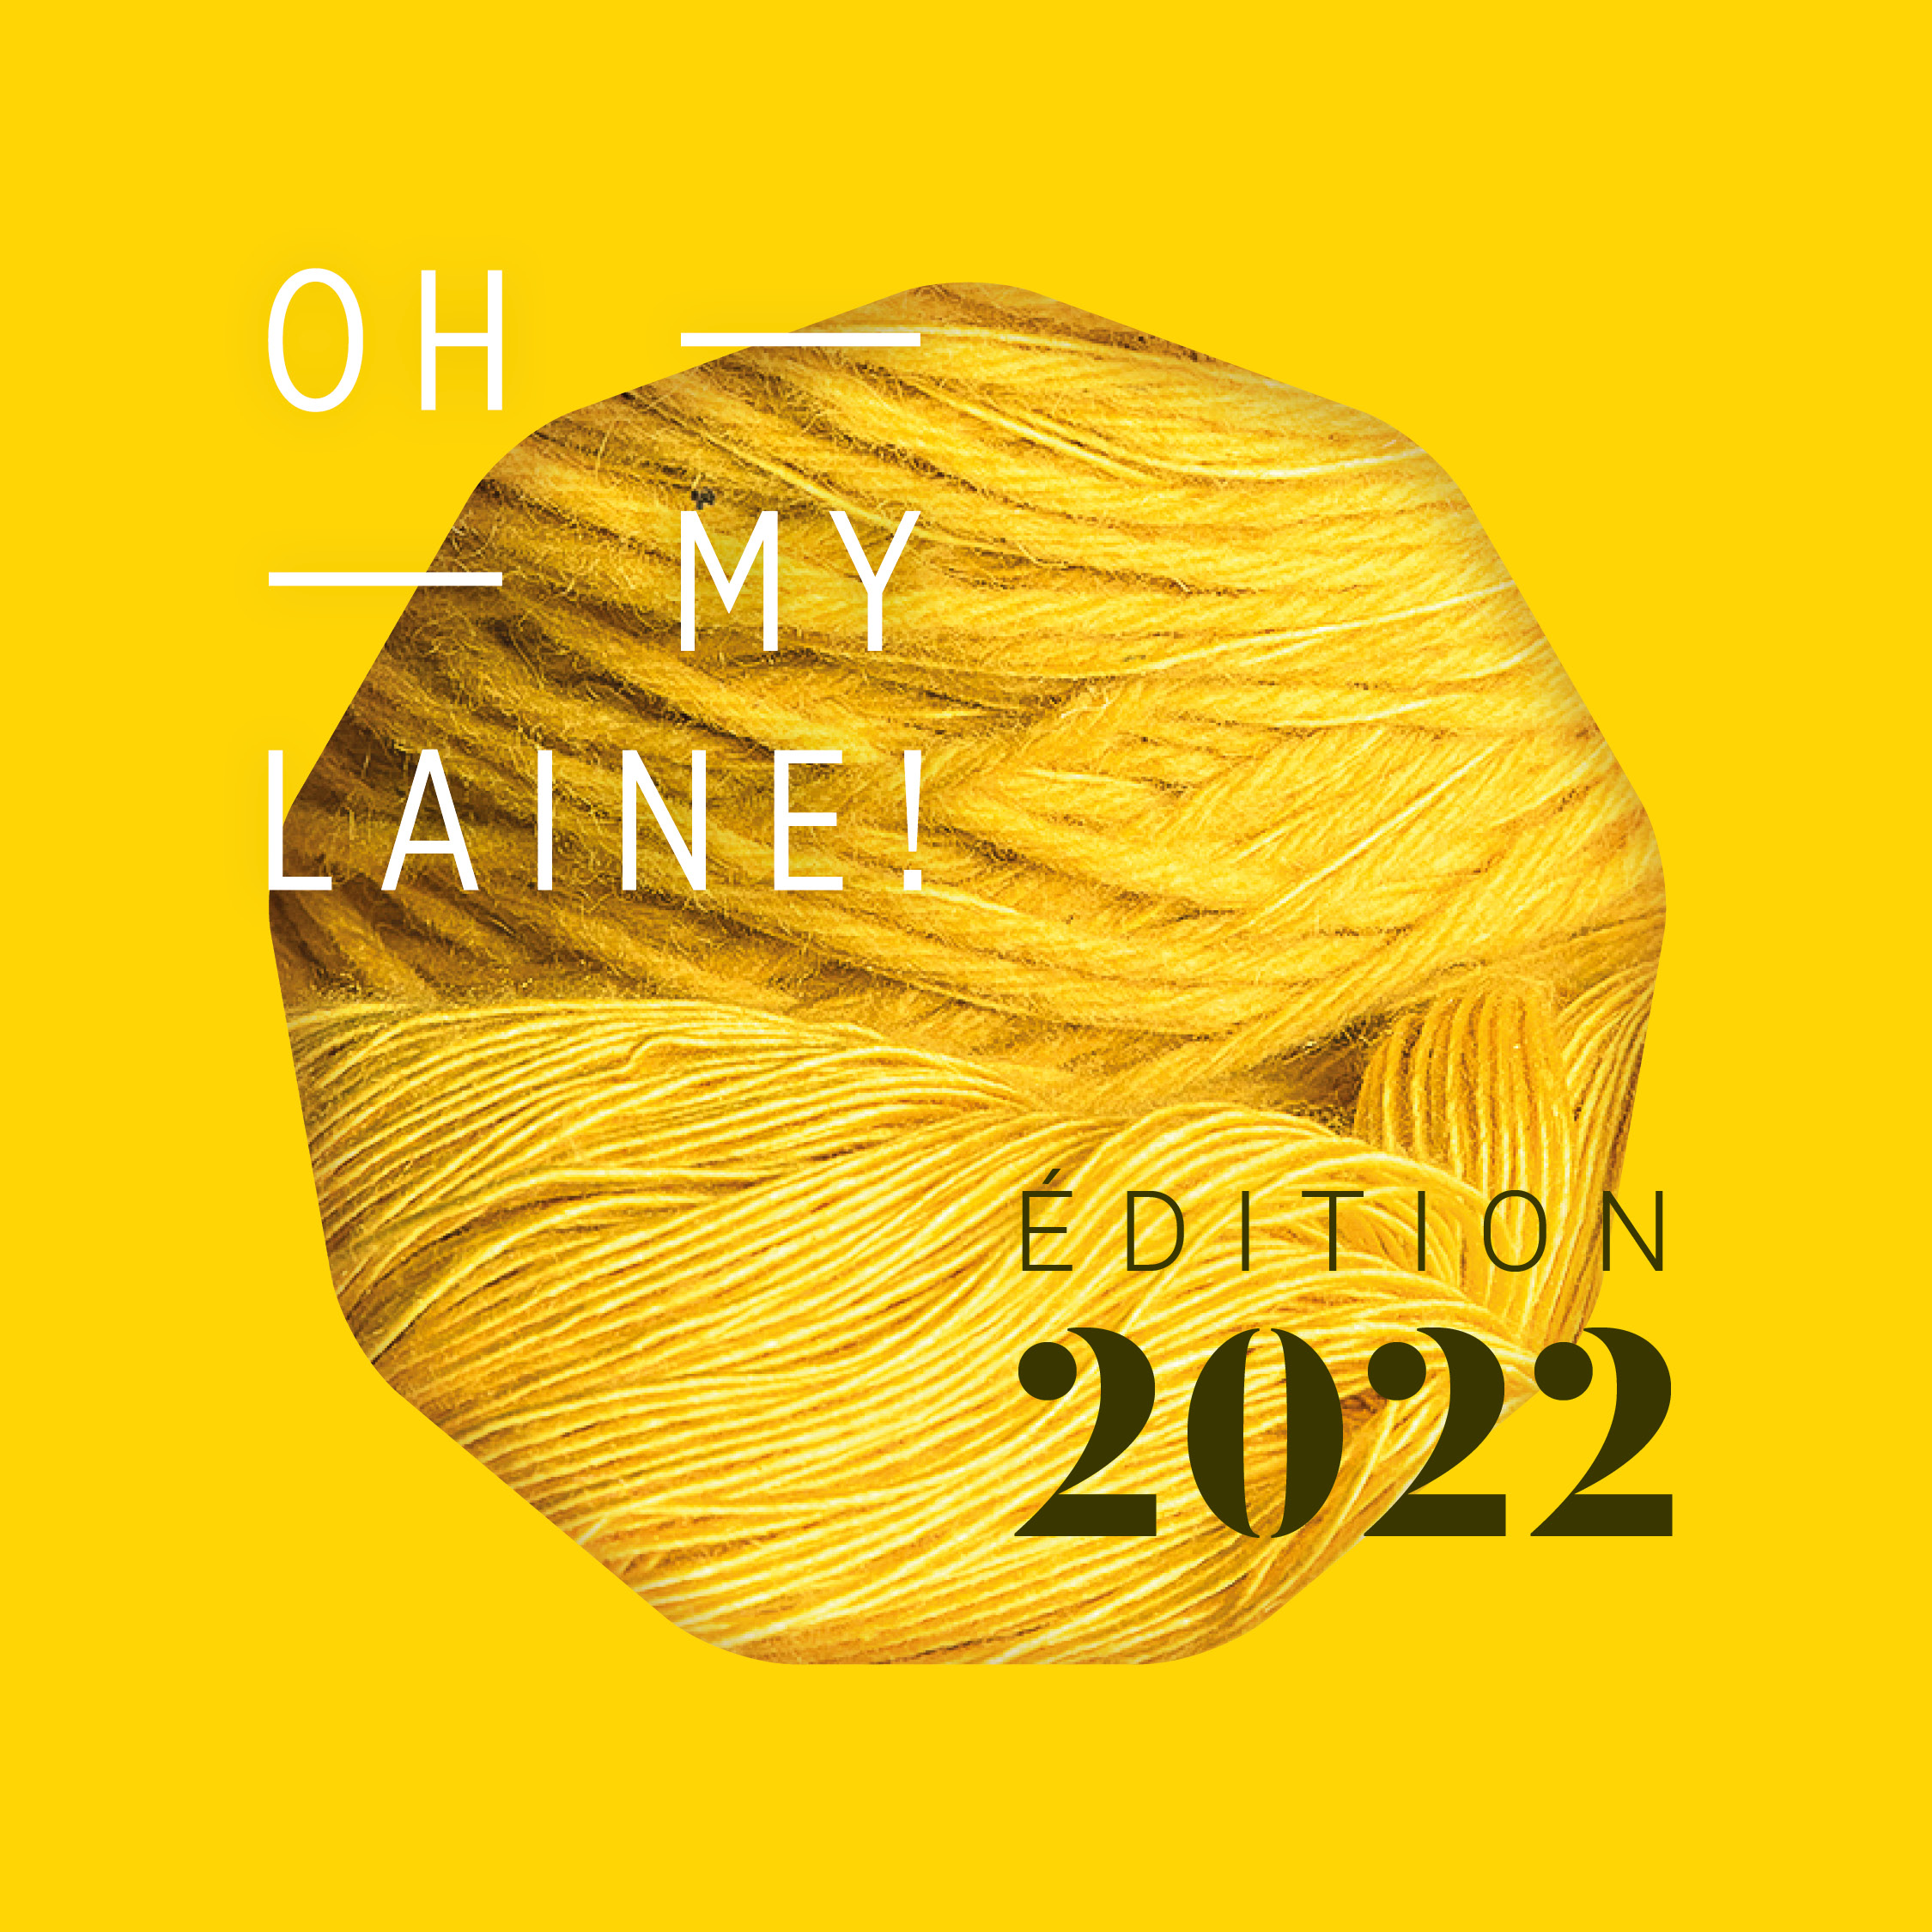 Oh my laine! édition 2022